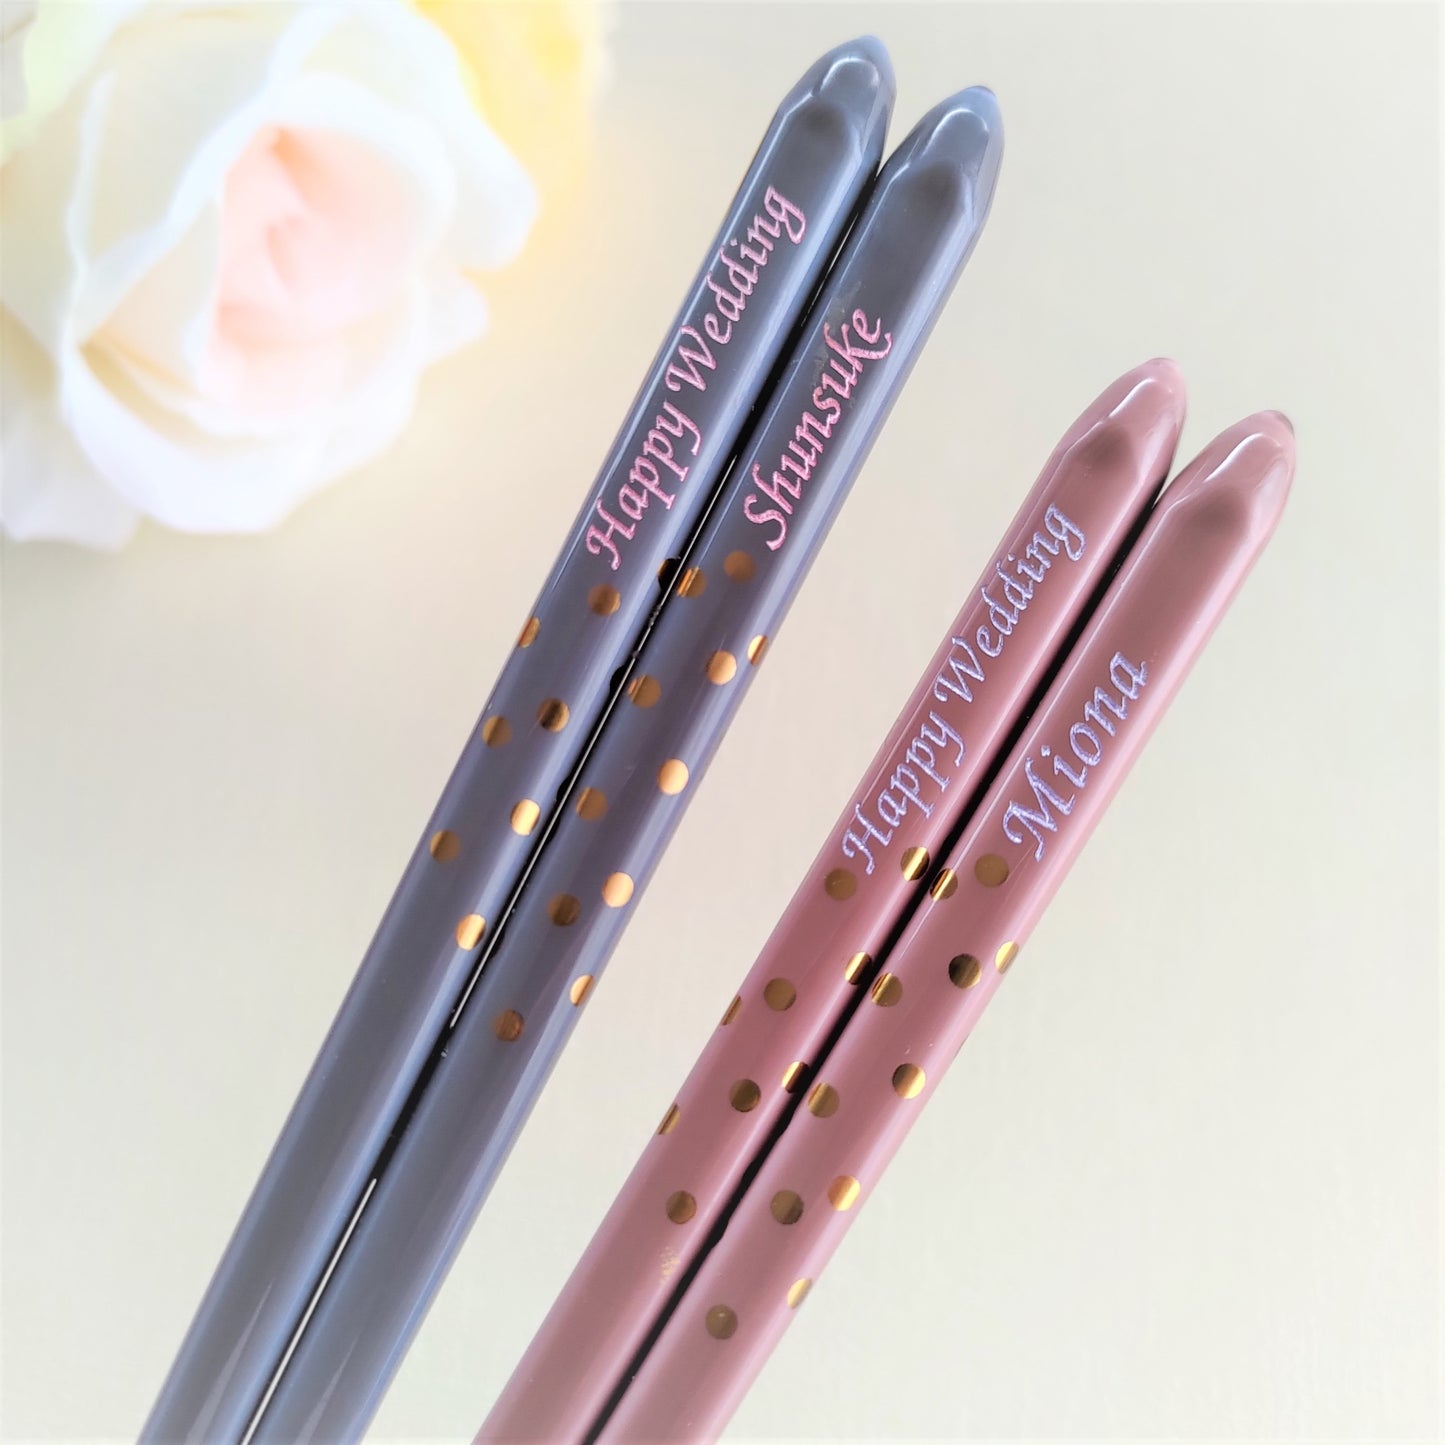 Golden spot Japanese chopsticks gray pink - SINGLE PAIR